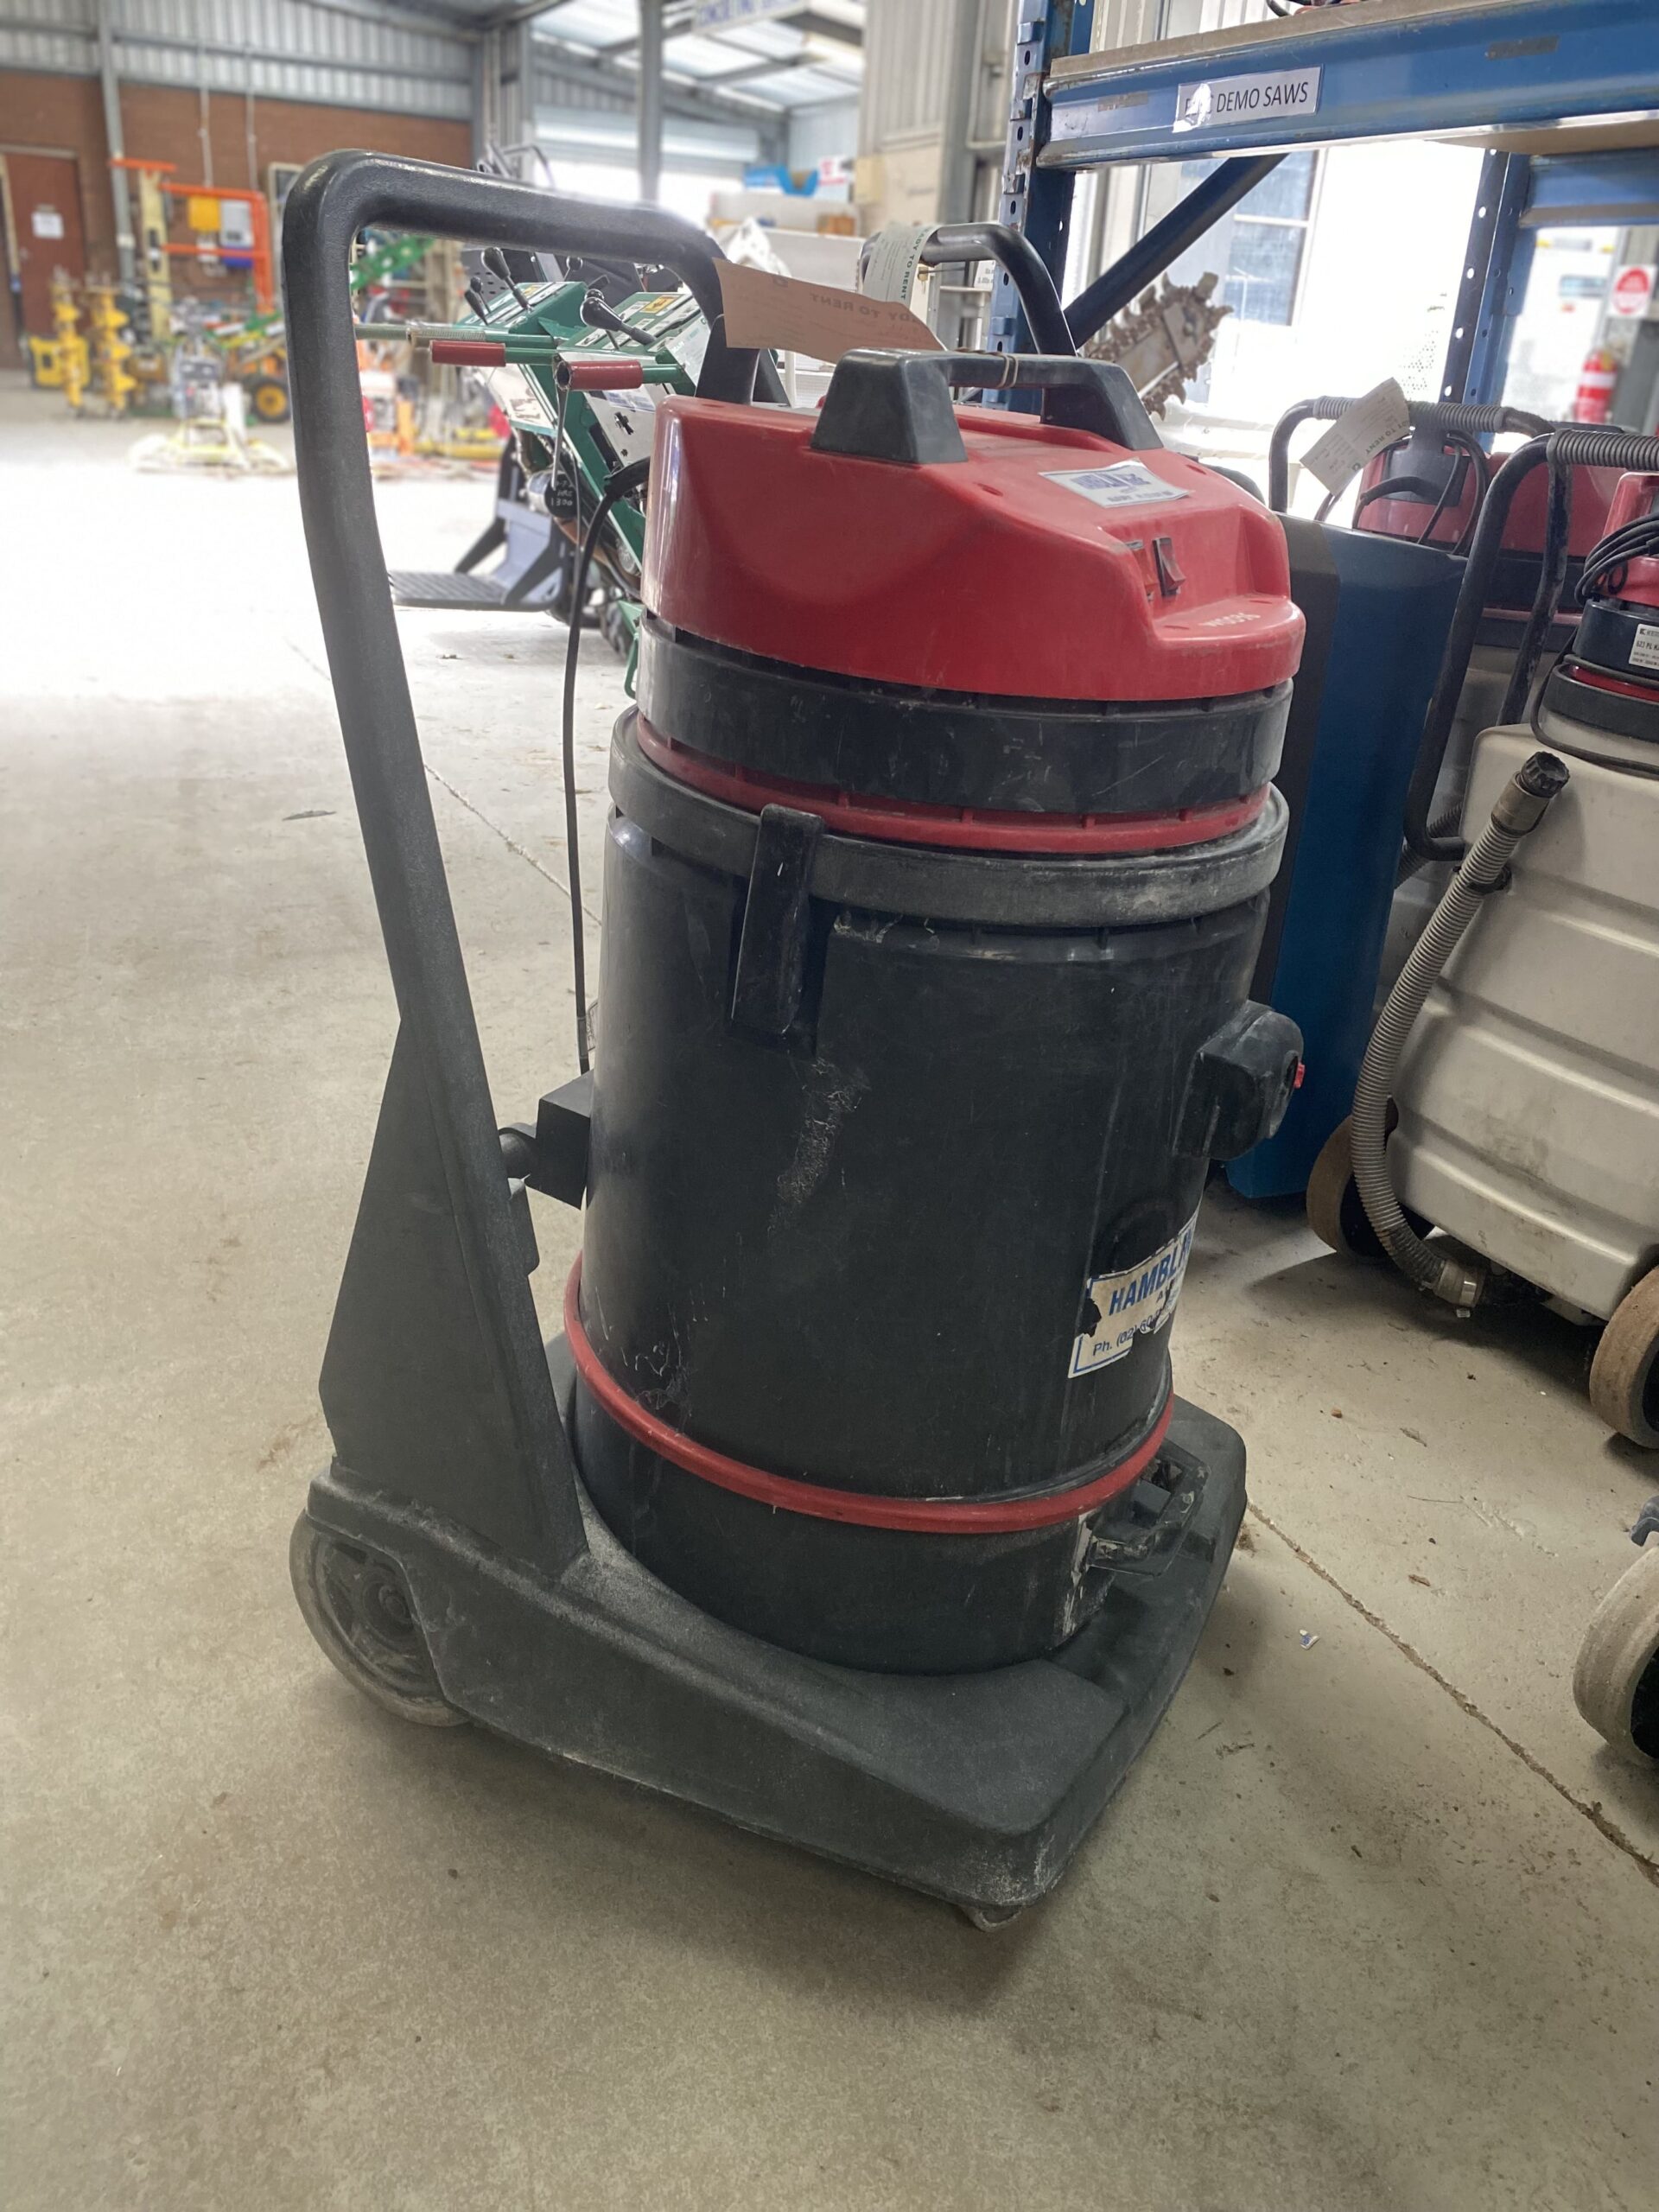 Vacuum Cleaner – Wet & Dry